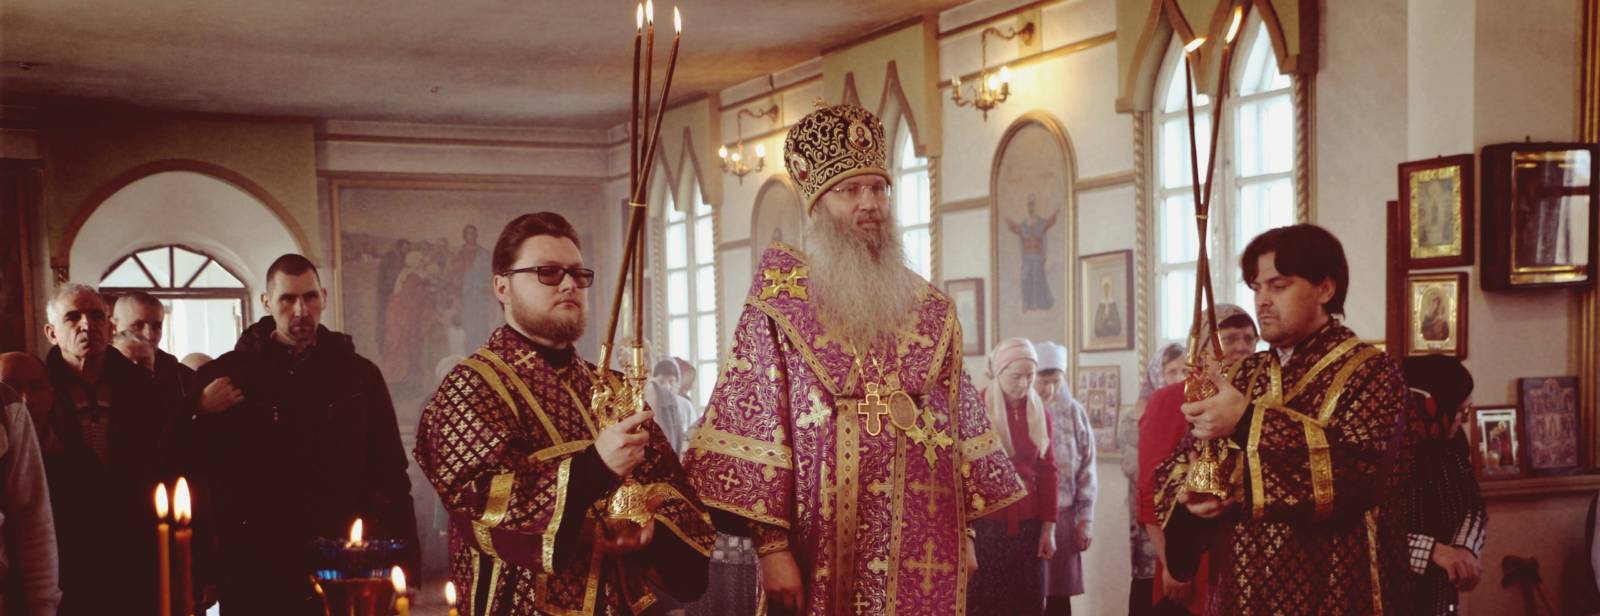 Божественная литургию в храме Архистратига Божия Михаила в х. Алексиковском.